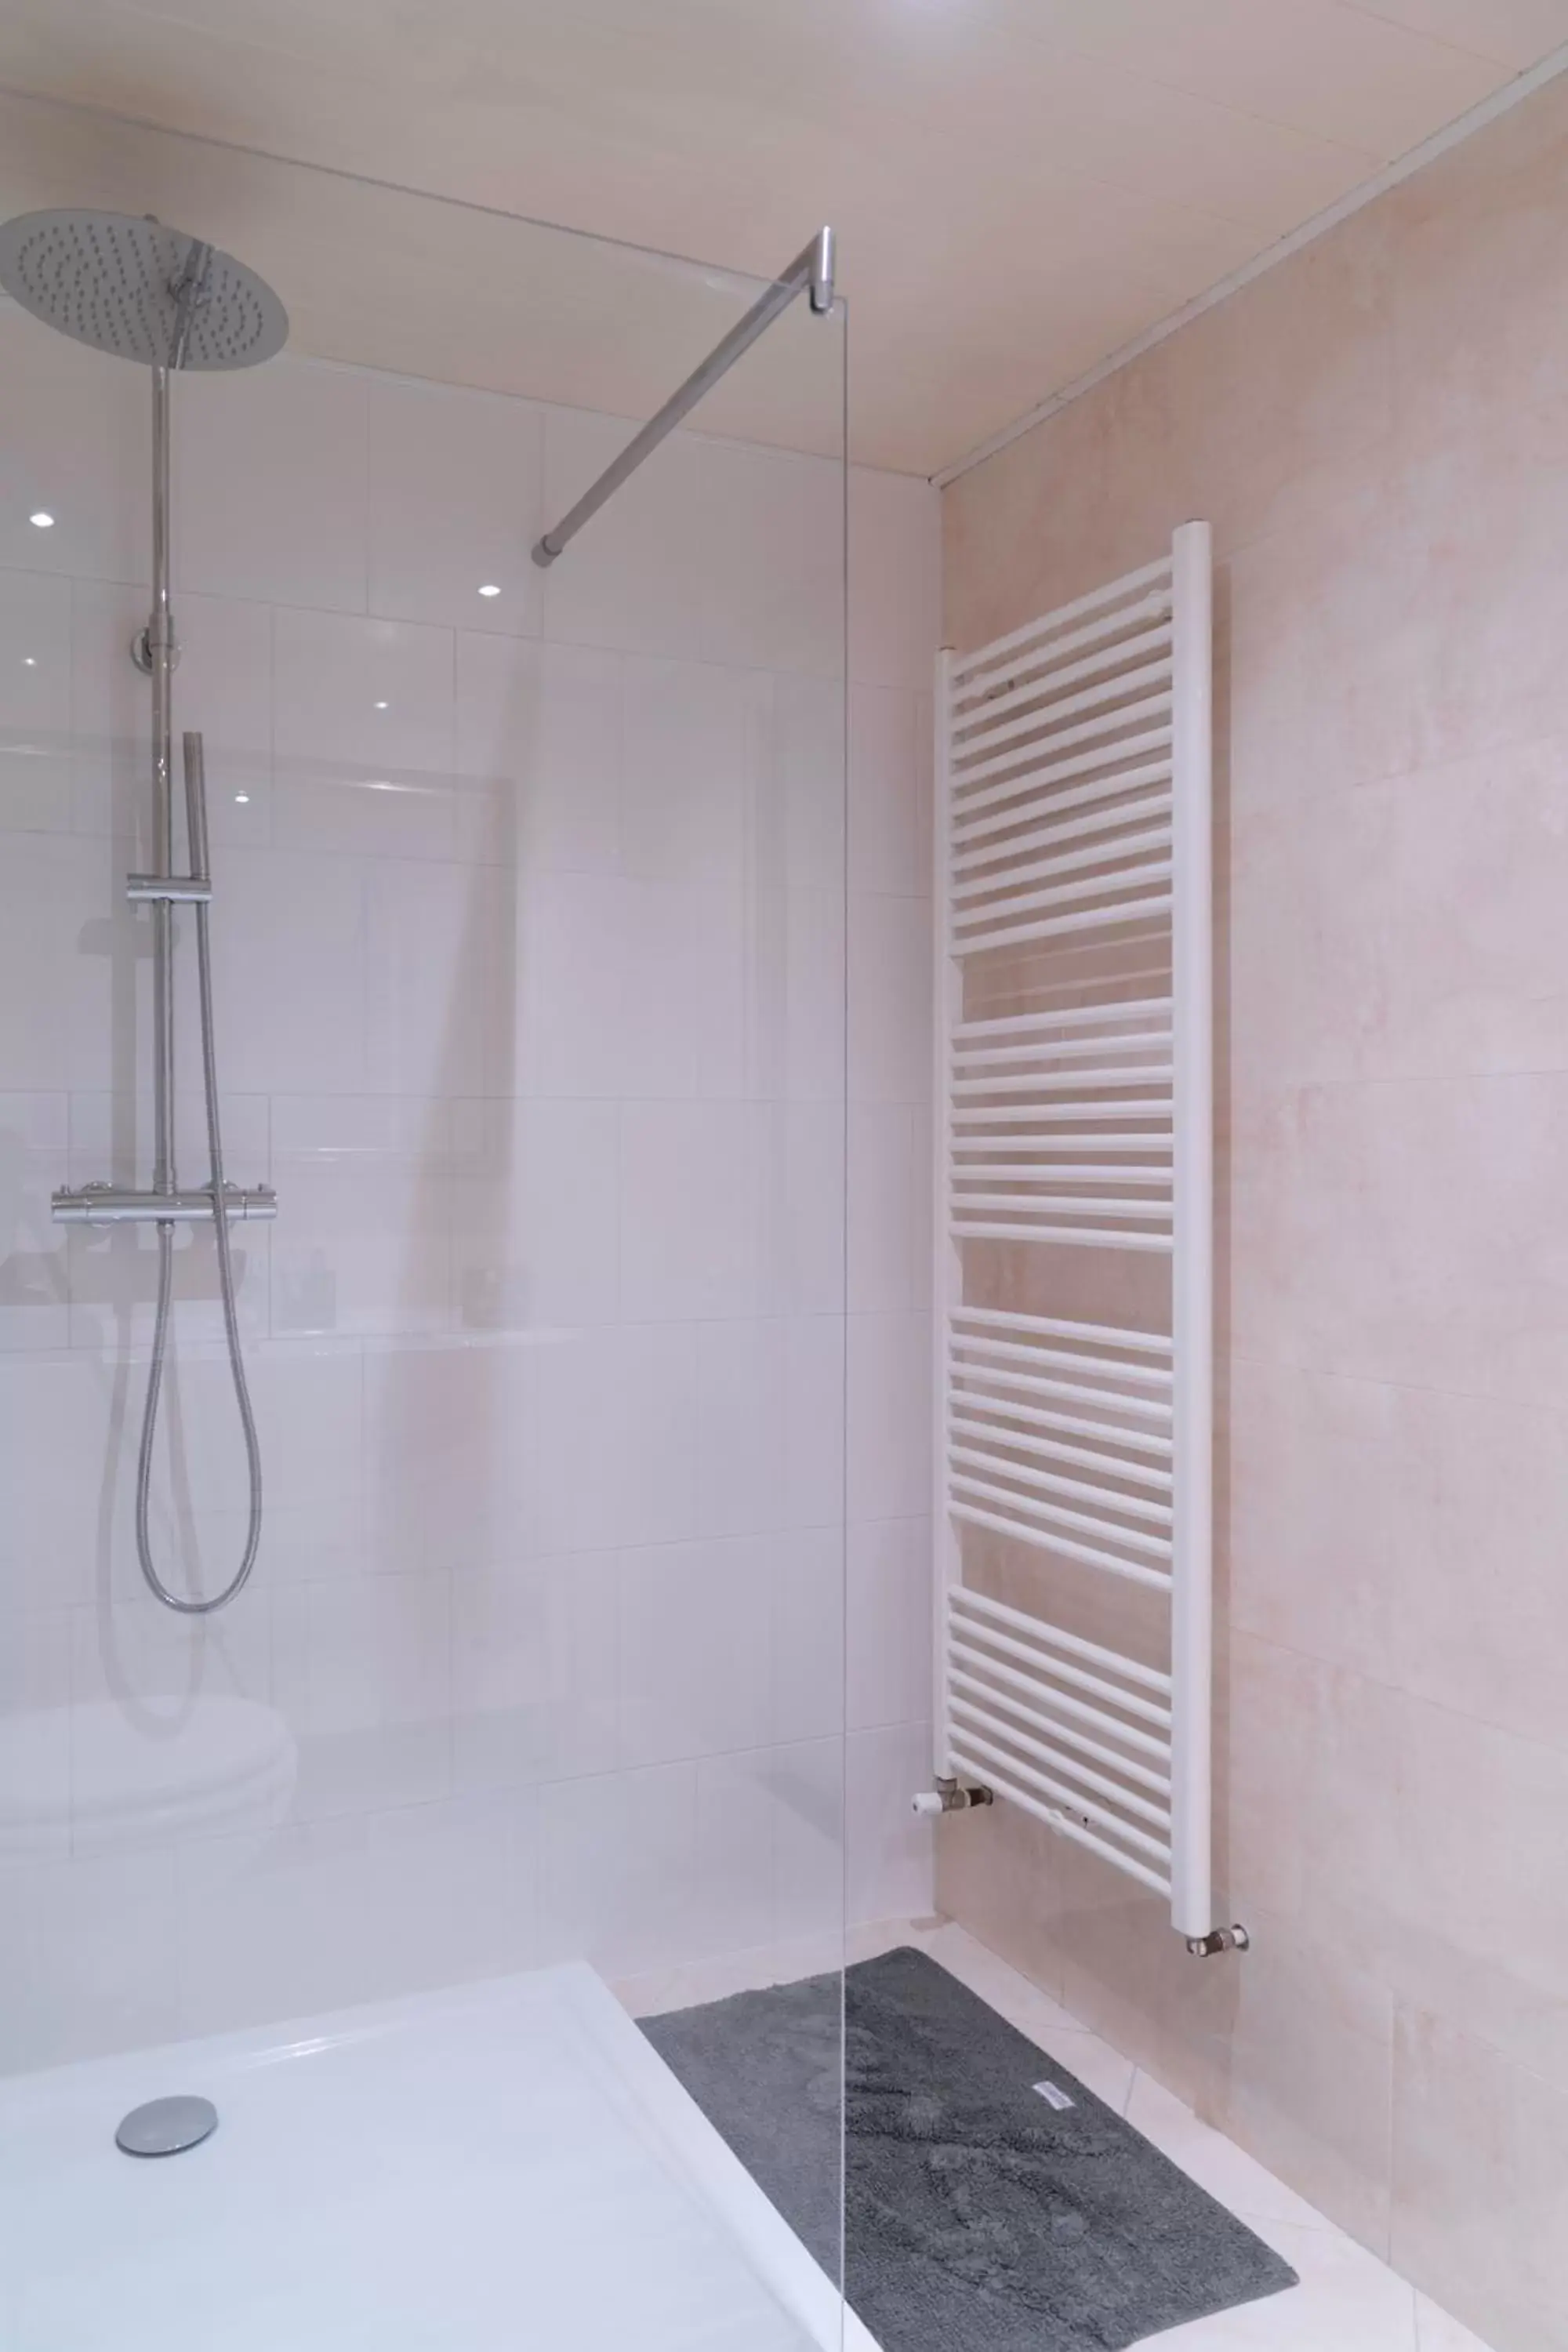 Shower, Bathroom in CENTRUM-MARIASTRAAT-APELDOORN